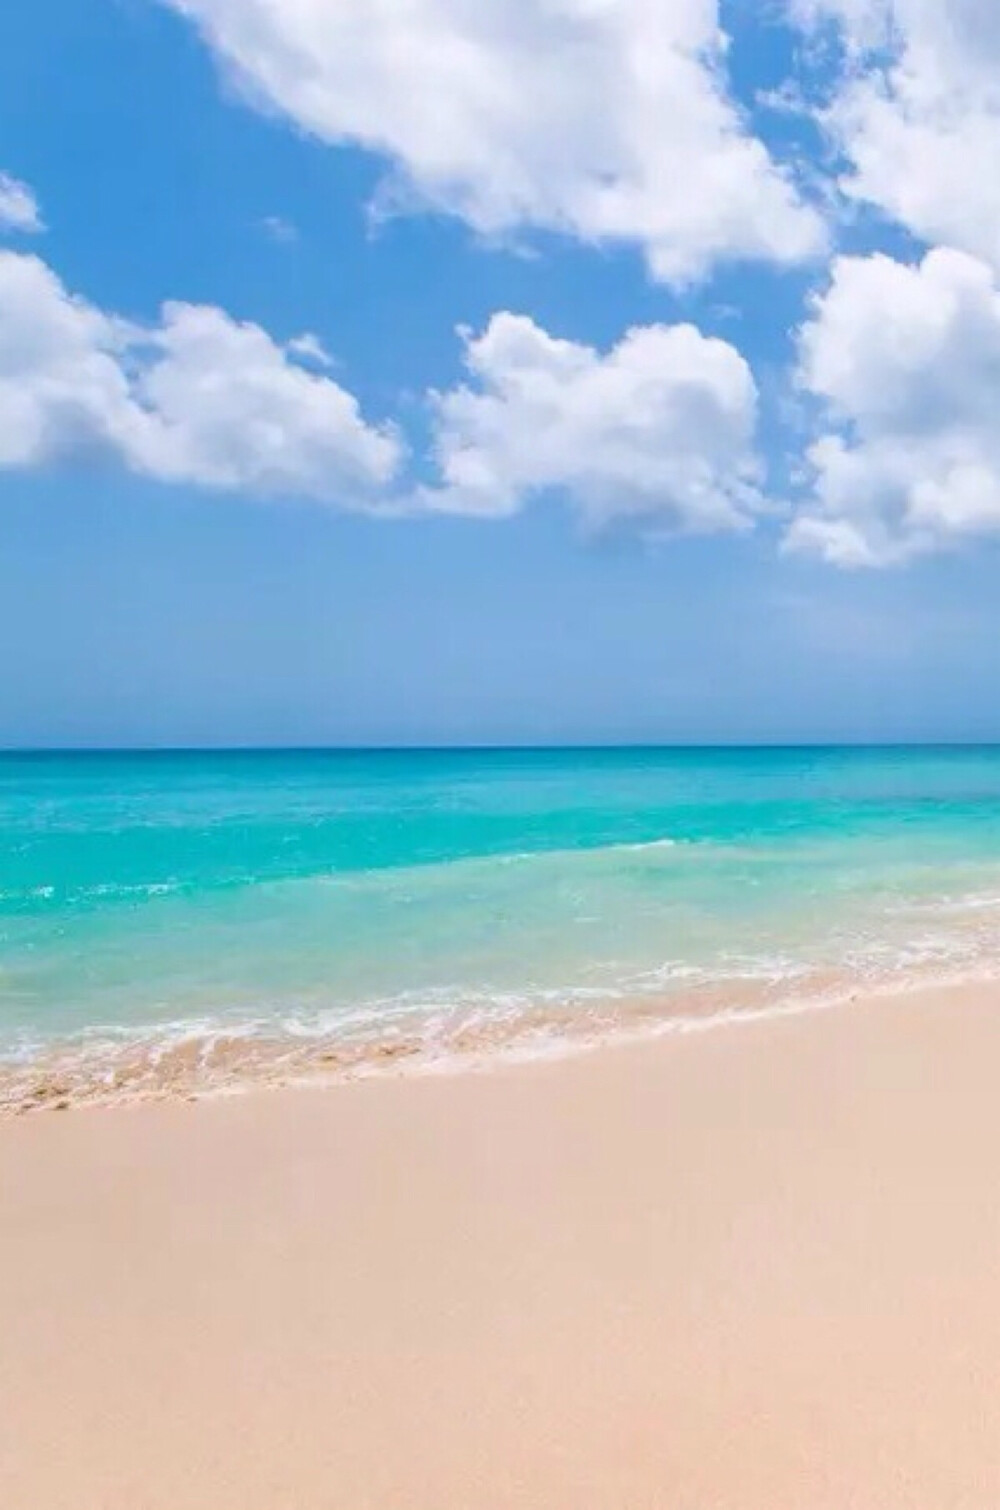 唯美自然风景 蓝天 碧水 白云 海水 沙滩 唯美风景 iphone手机壁纸